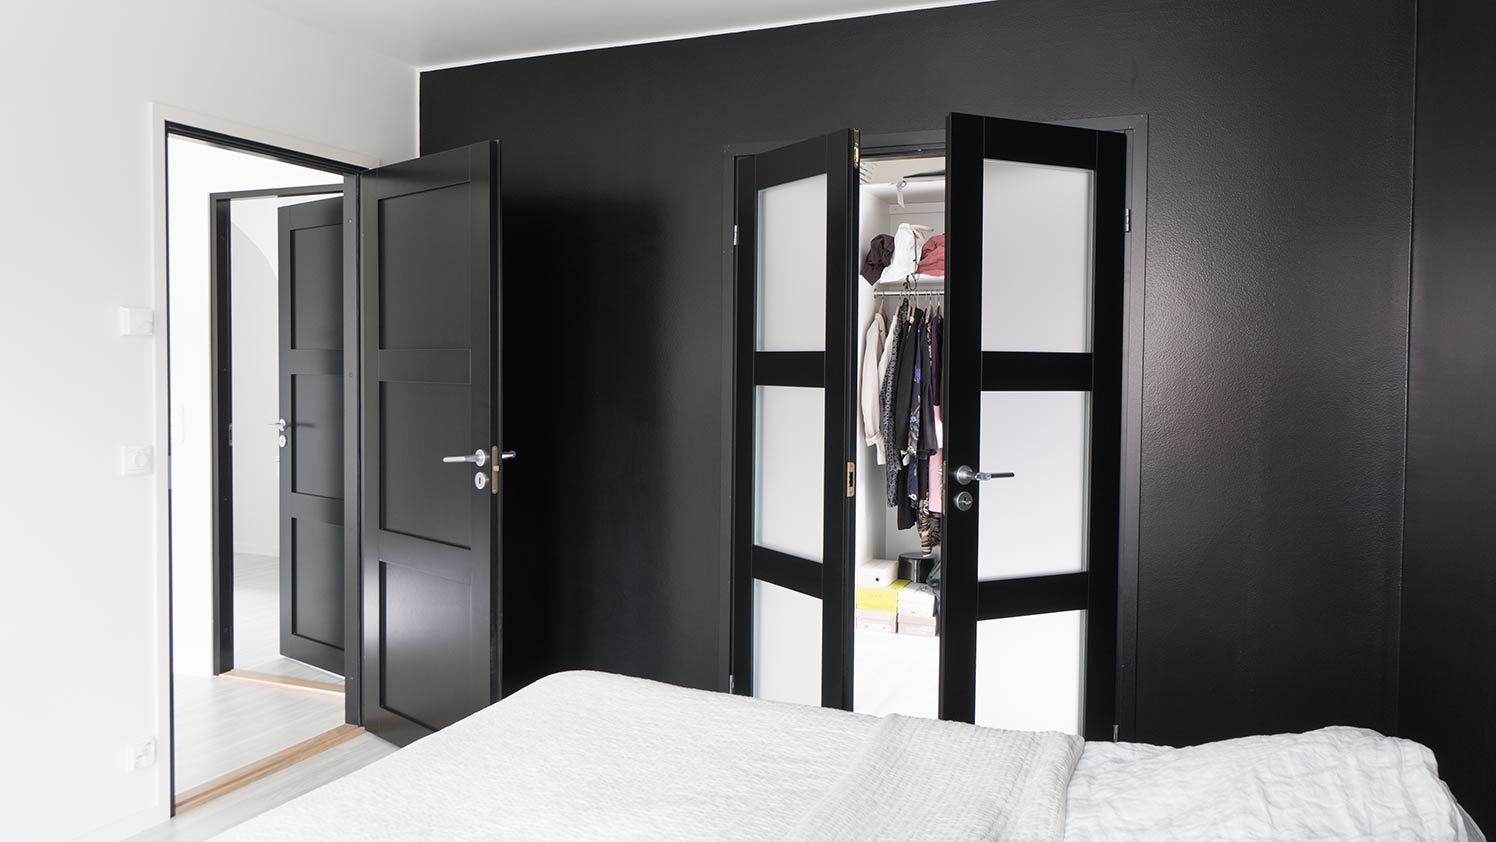 Makuuhuone on nukkujansa näköinen – tuo rauhaa äänieristetyillä ovilla tai yhdistä tiloja lasitettujen ovien avulla